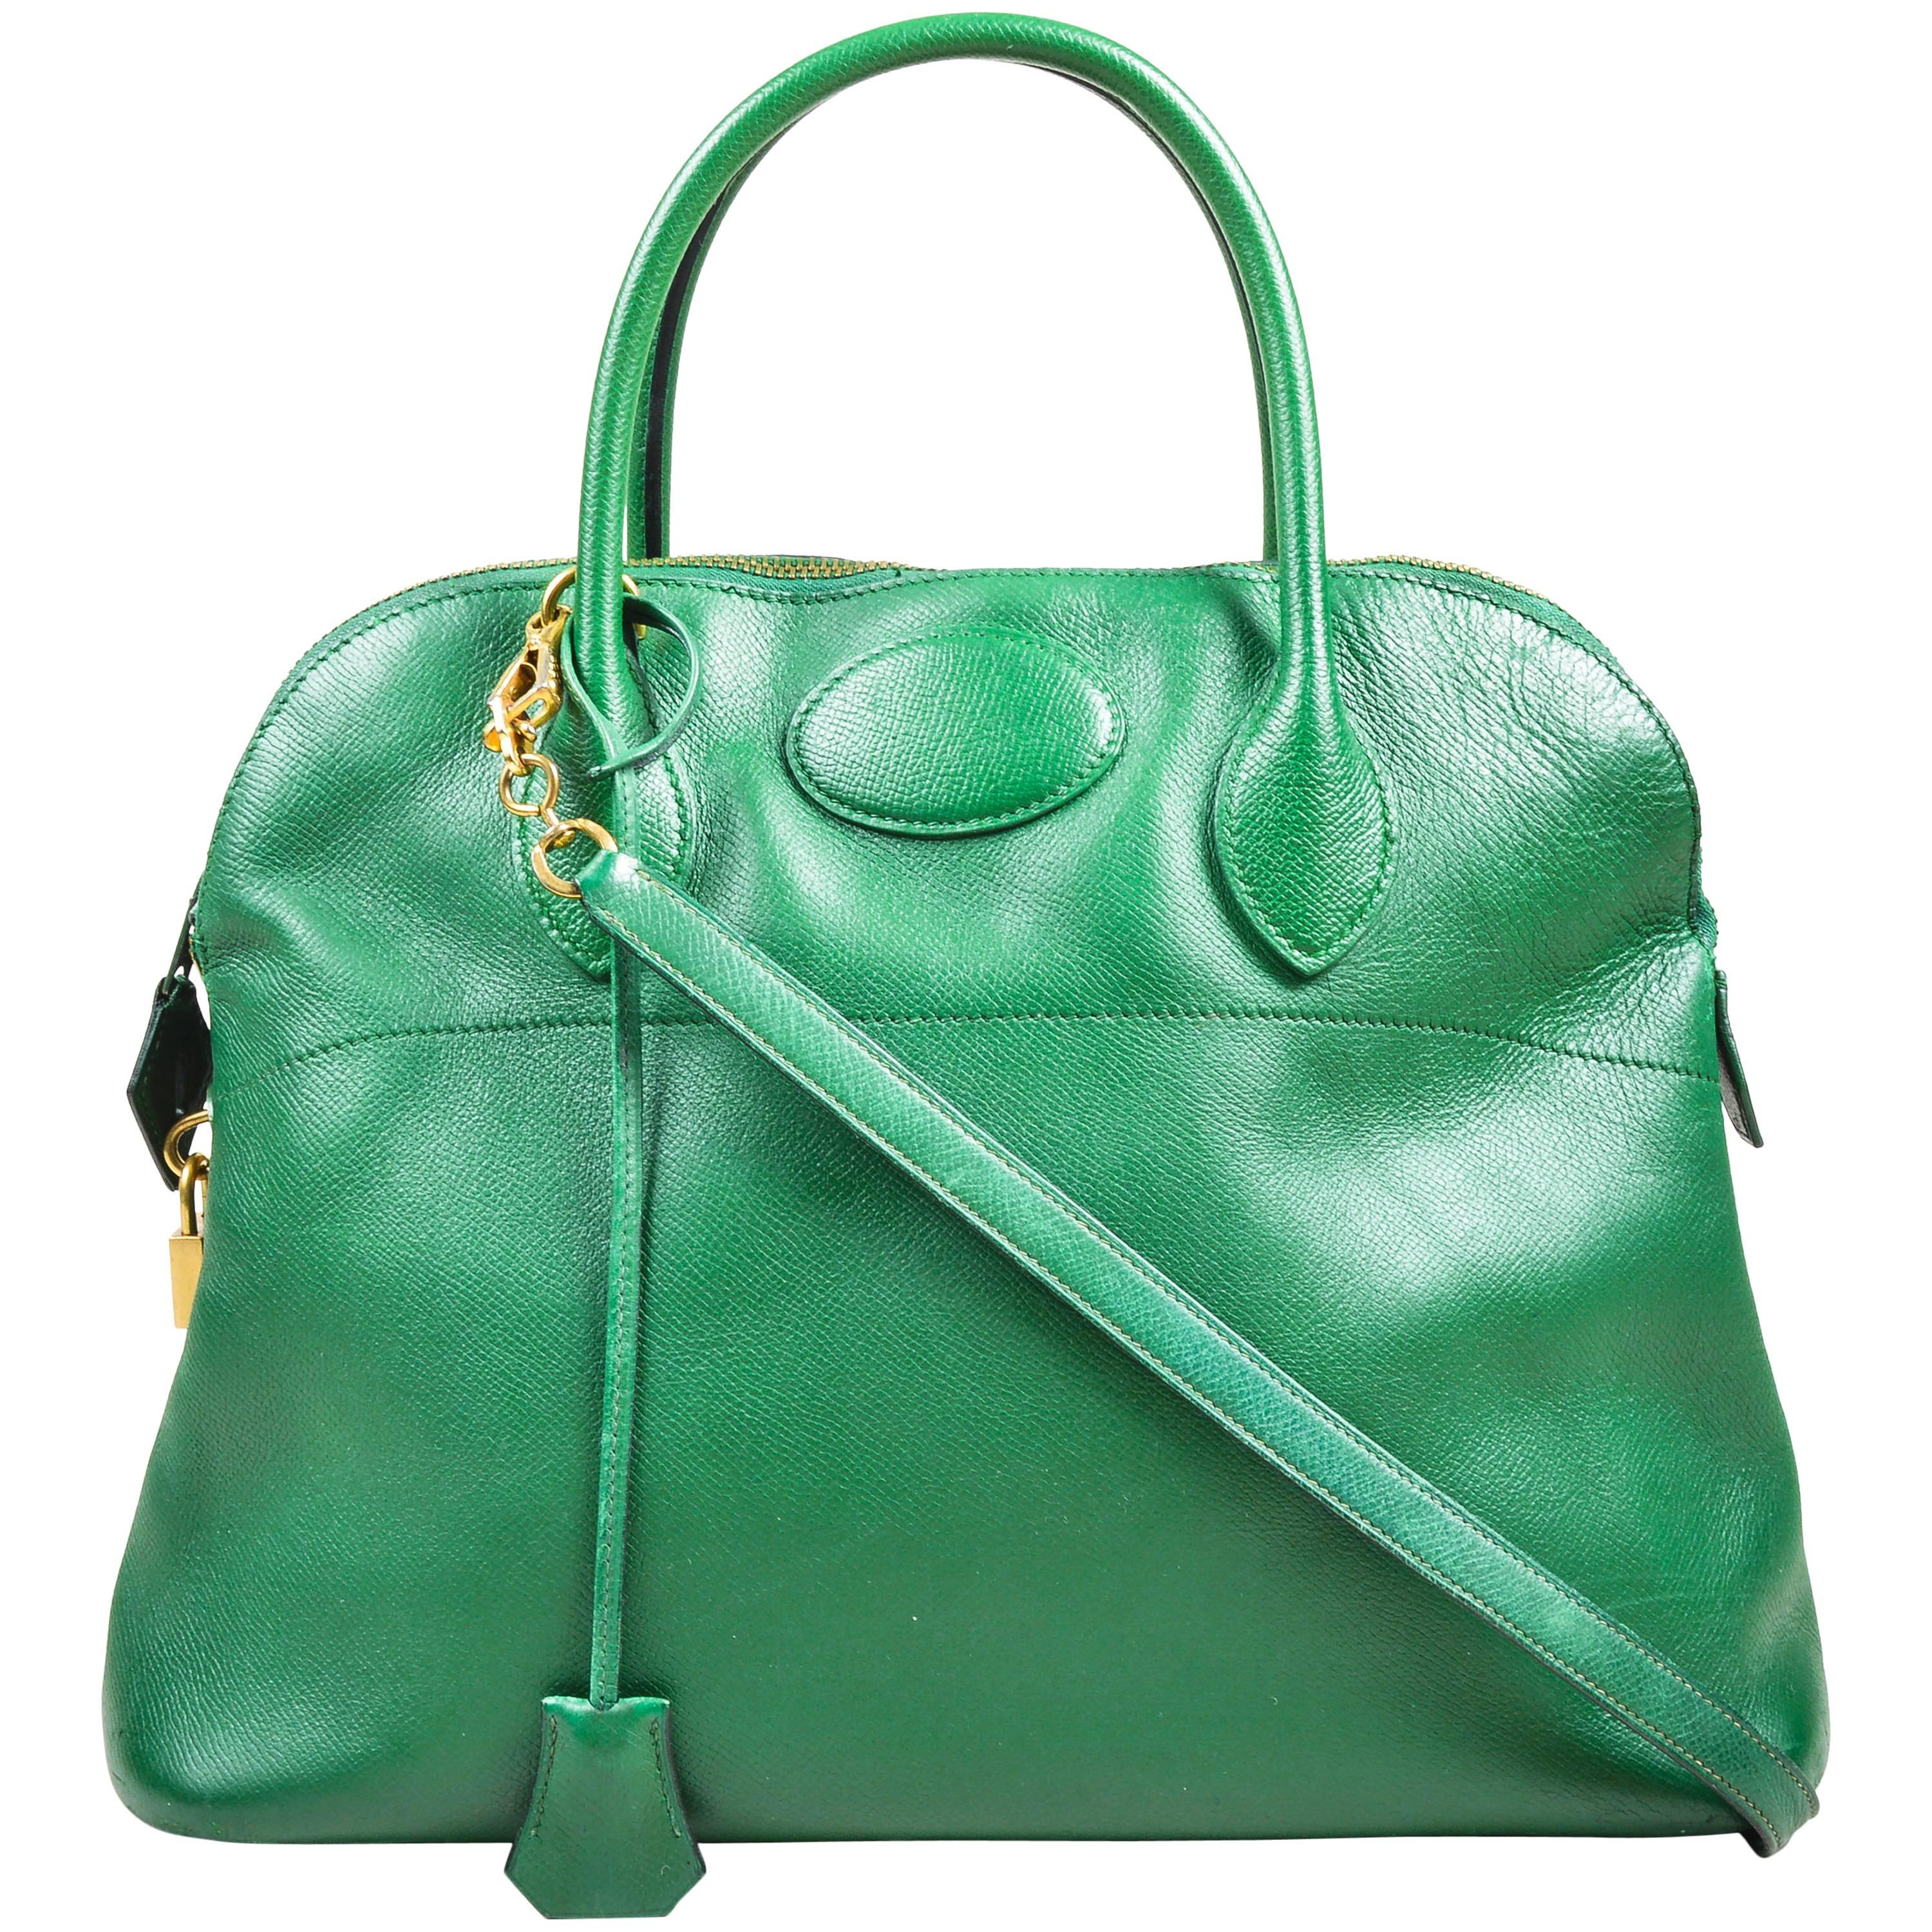 Vintage Hermes Kelly Green Leather "Bolide 35cm" Structured Satchel Handbag For Sale